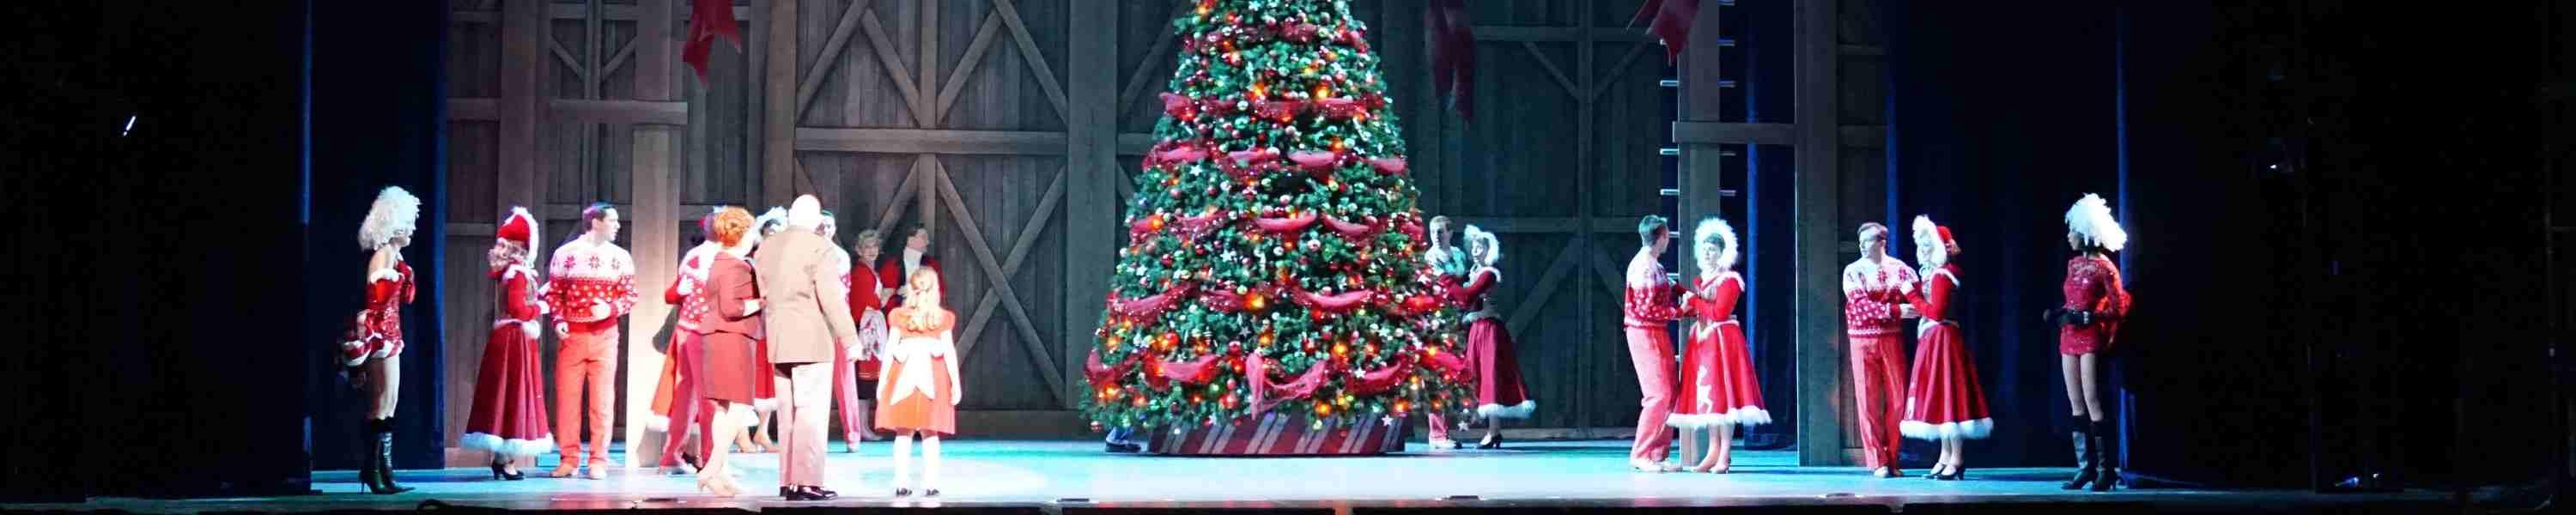 White Christmas at Hamilton Family Theatre